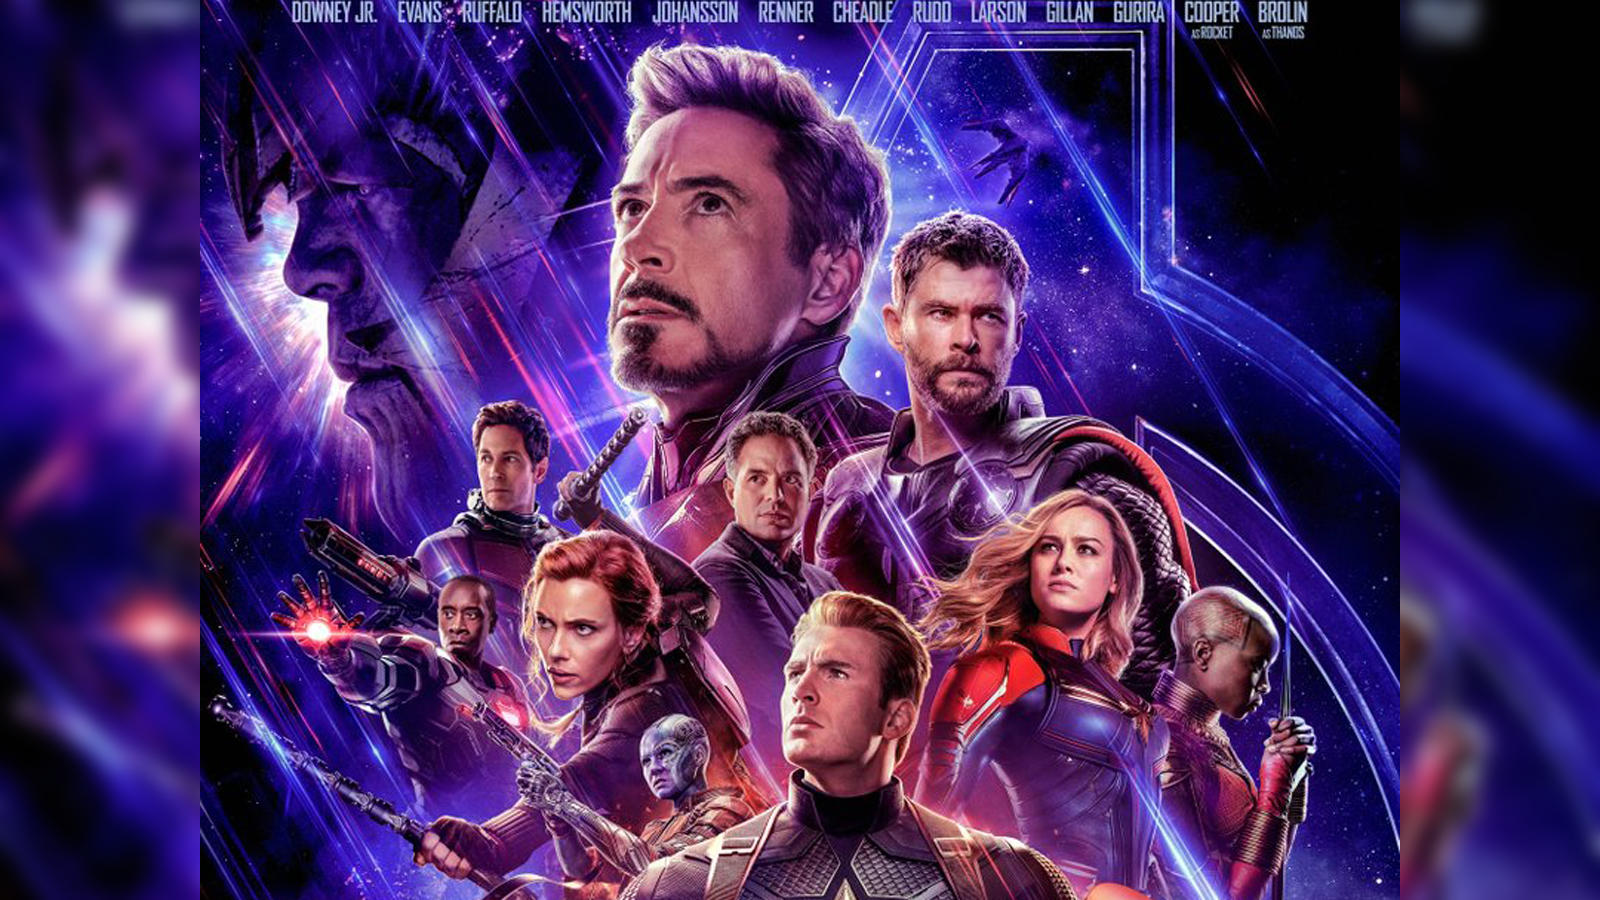 Avengers Endgame, Full Avengers Endgame Movie in 30 minutes